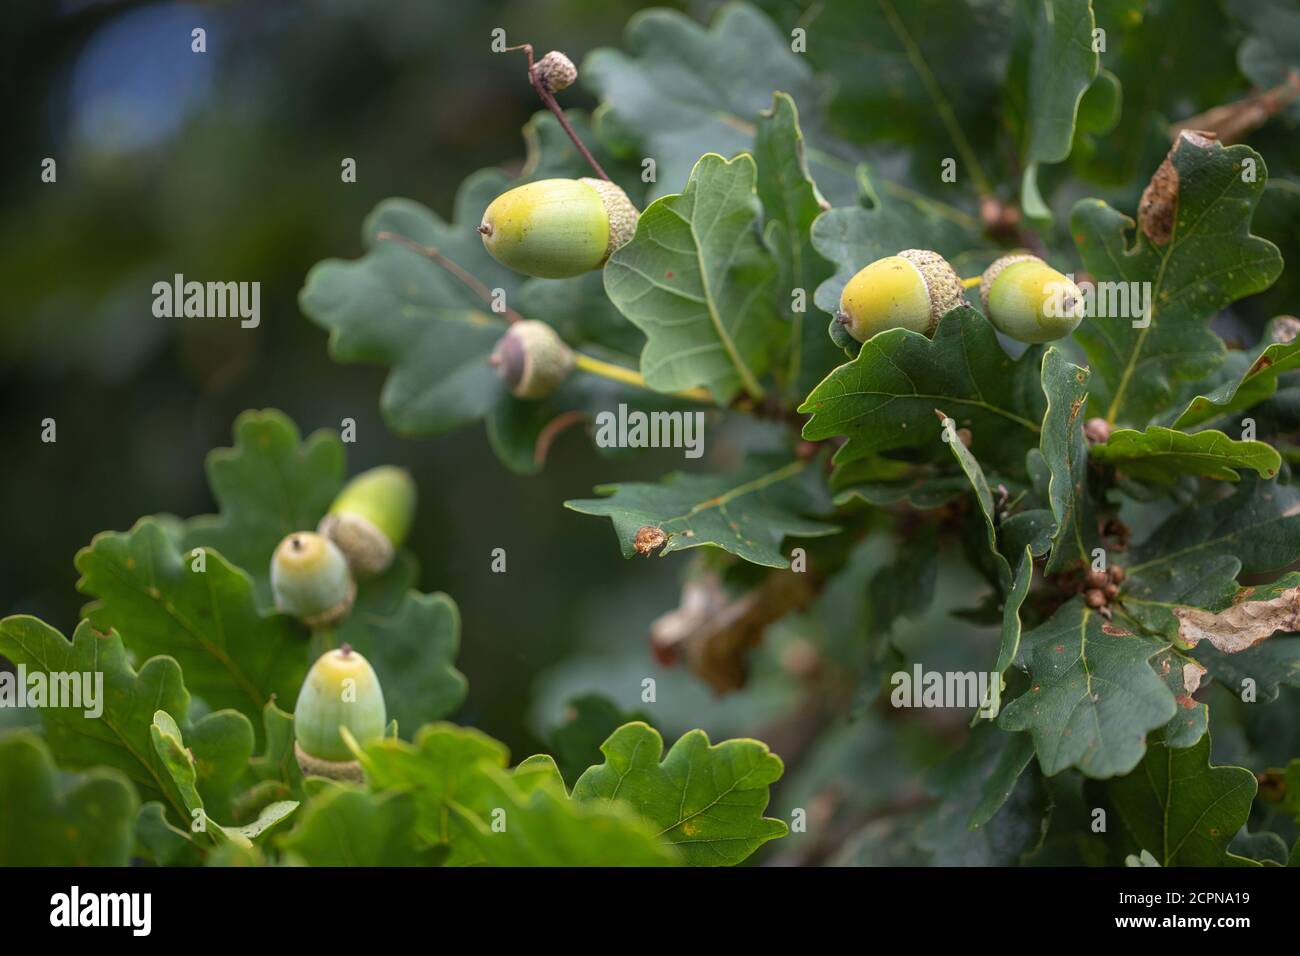 Blätter, Laub und Eicheln. Früchte der englischen oder pedunculate Eiche (Quercus robur). Nahaufnahme. Von unten betrachtet, Blick in die Zweige. Stockfoto